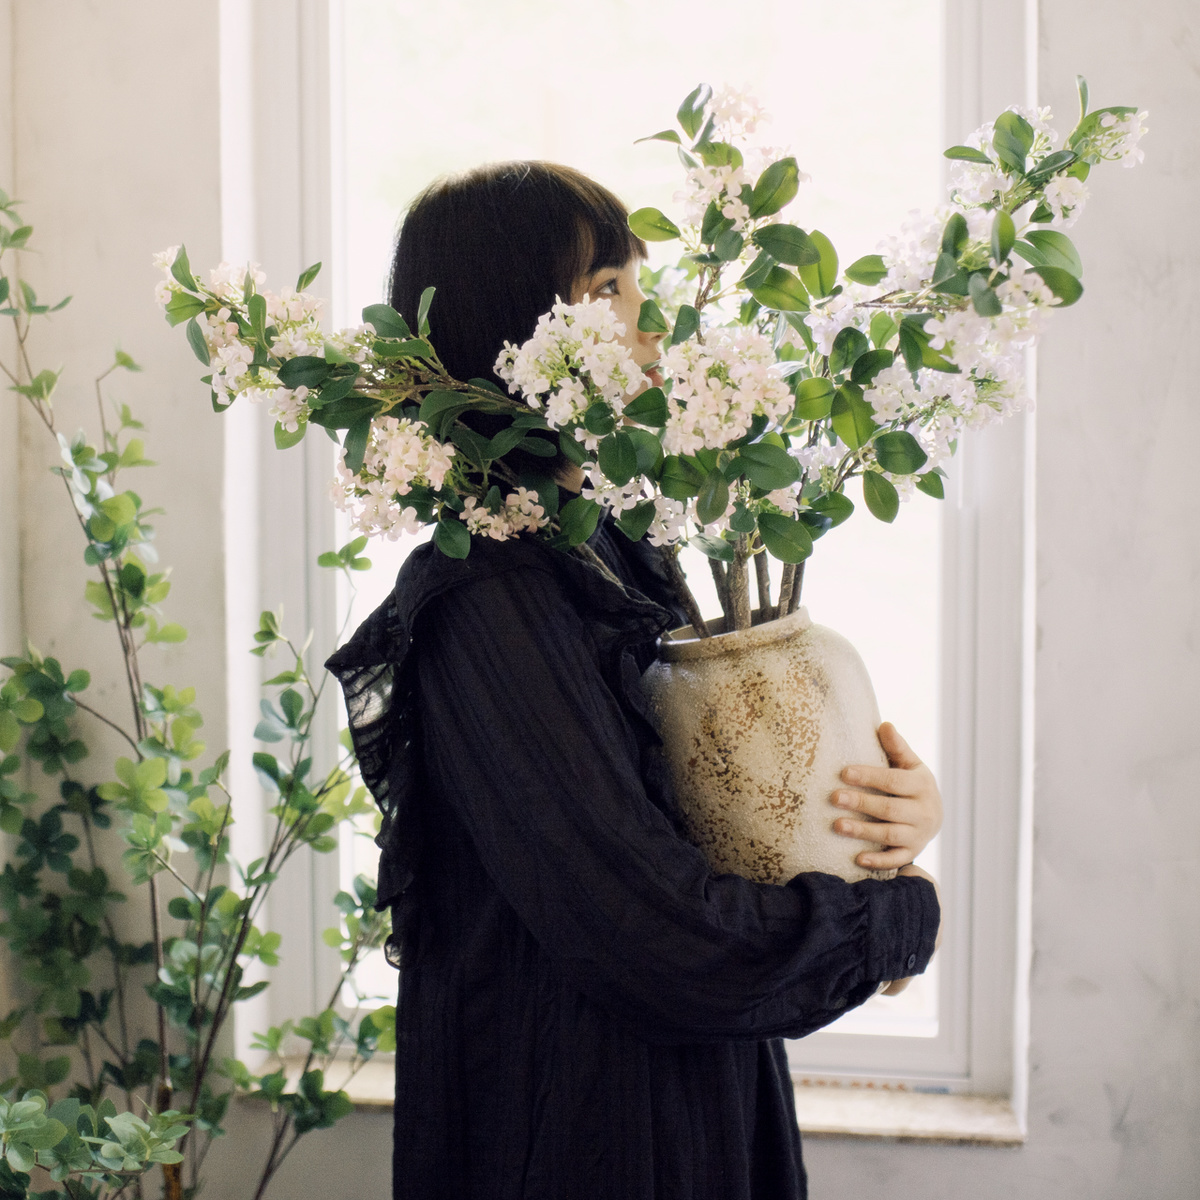 一位年轻女子在一个有窗户的房间里拿着一个插着白色花朵的花瓶